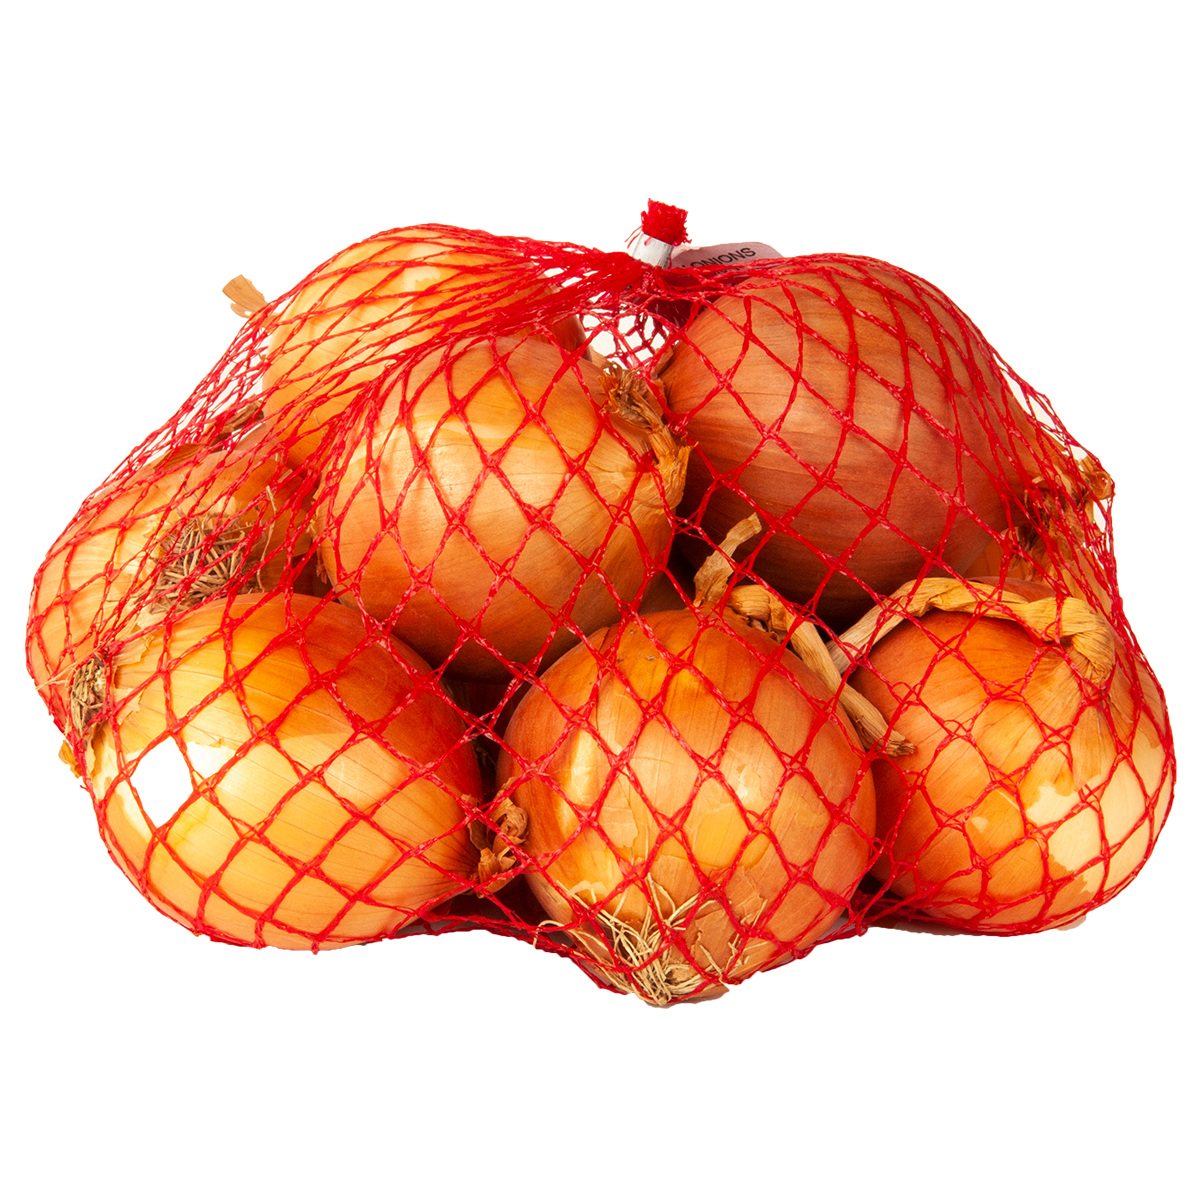 Yellow Onions - 3 lbs